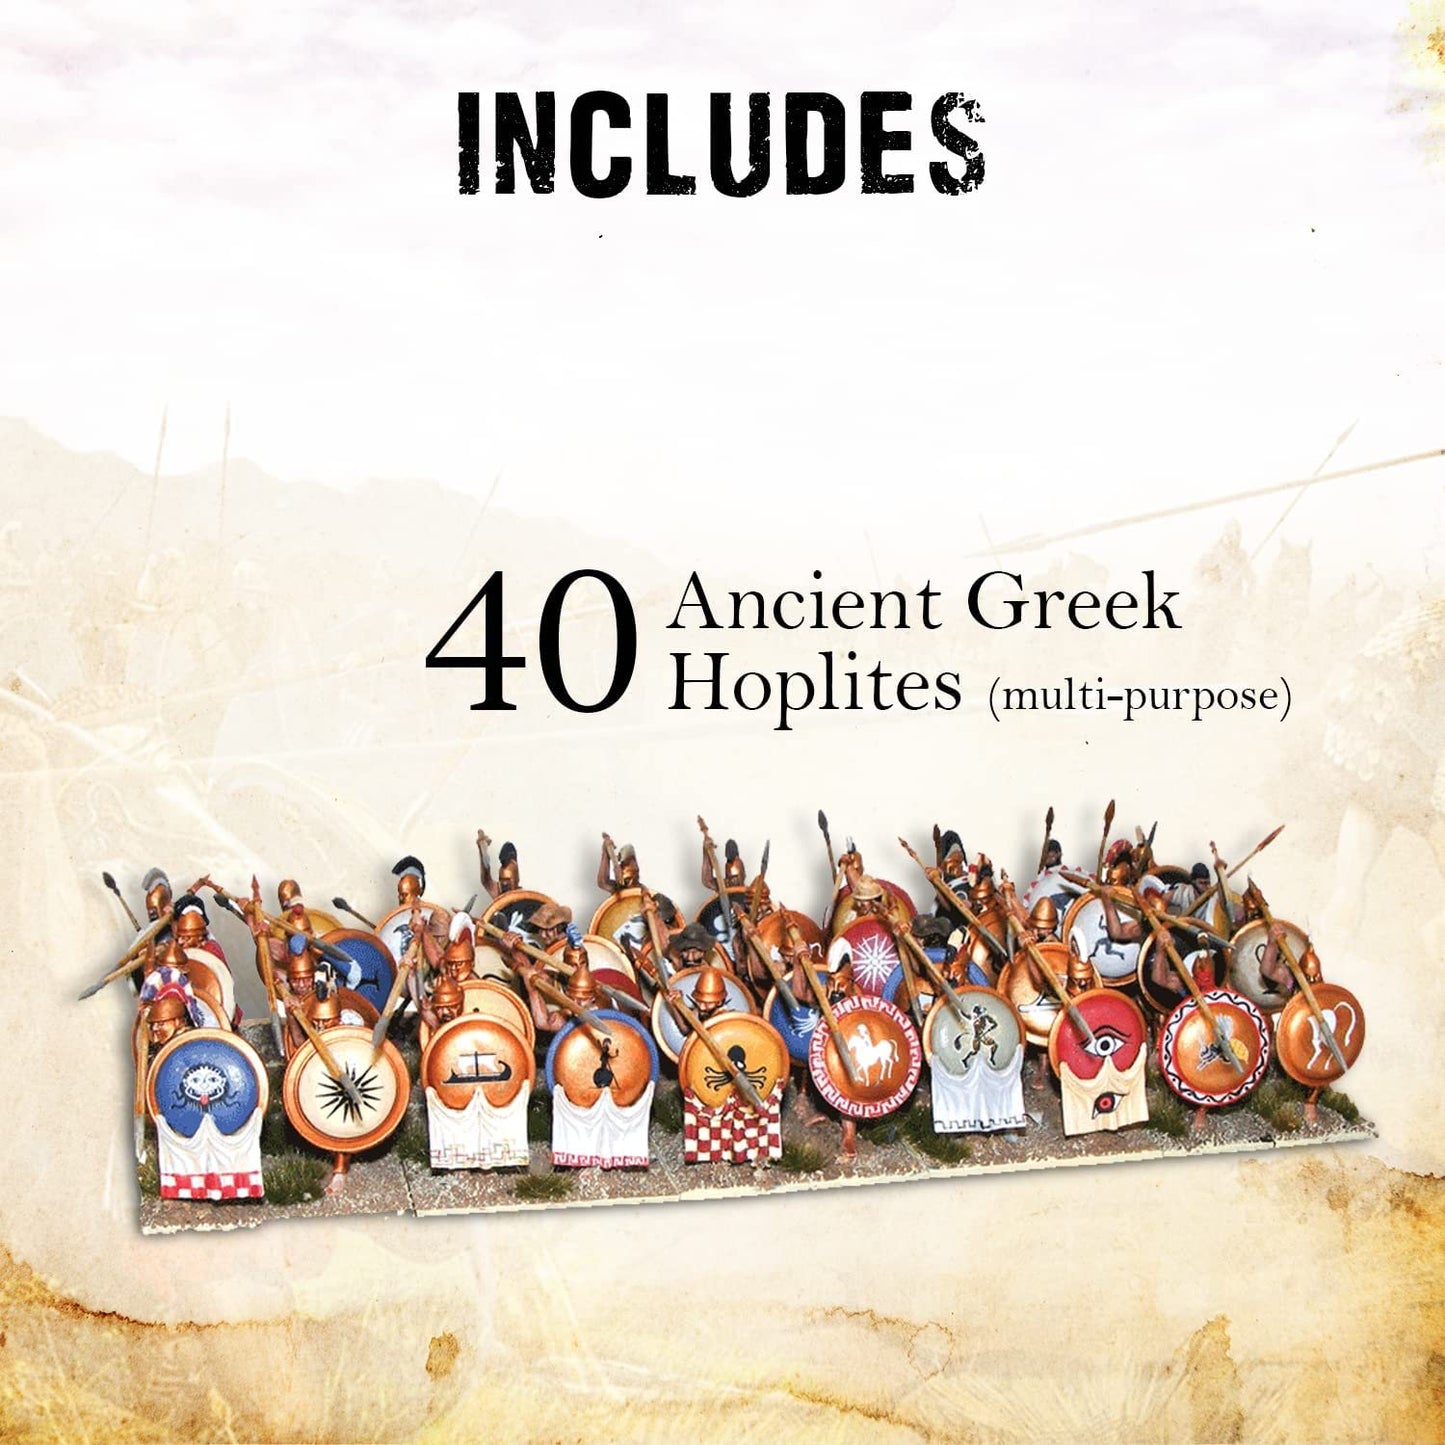 Hail Caesar - Aegean States : Greeks: Classic Greek Phalanx